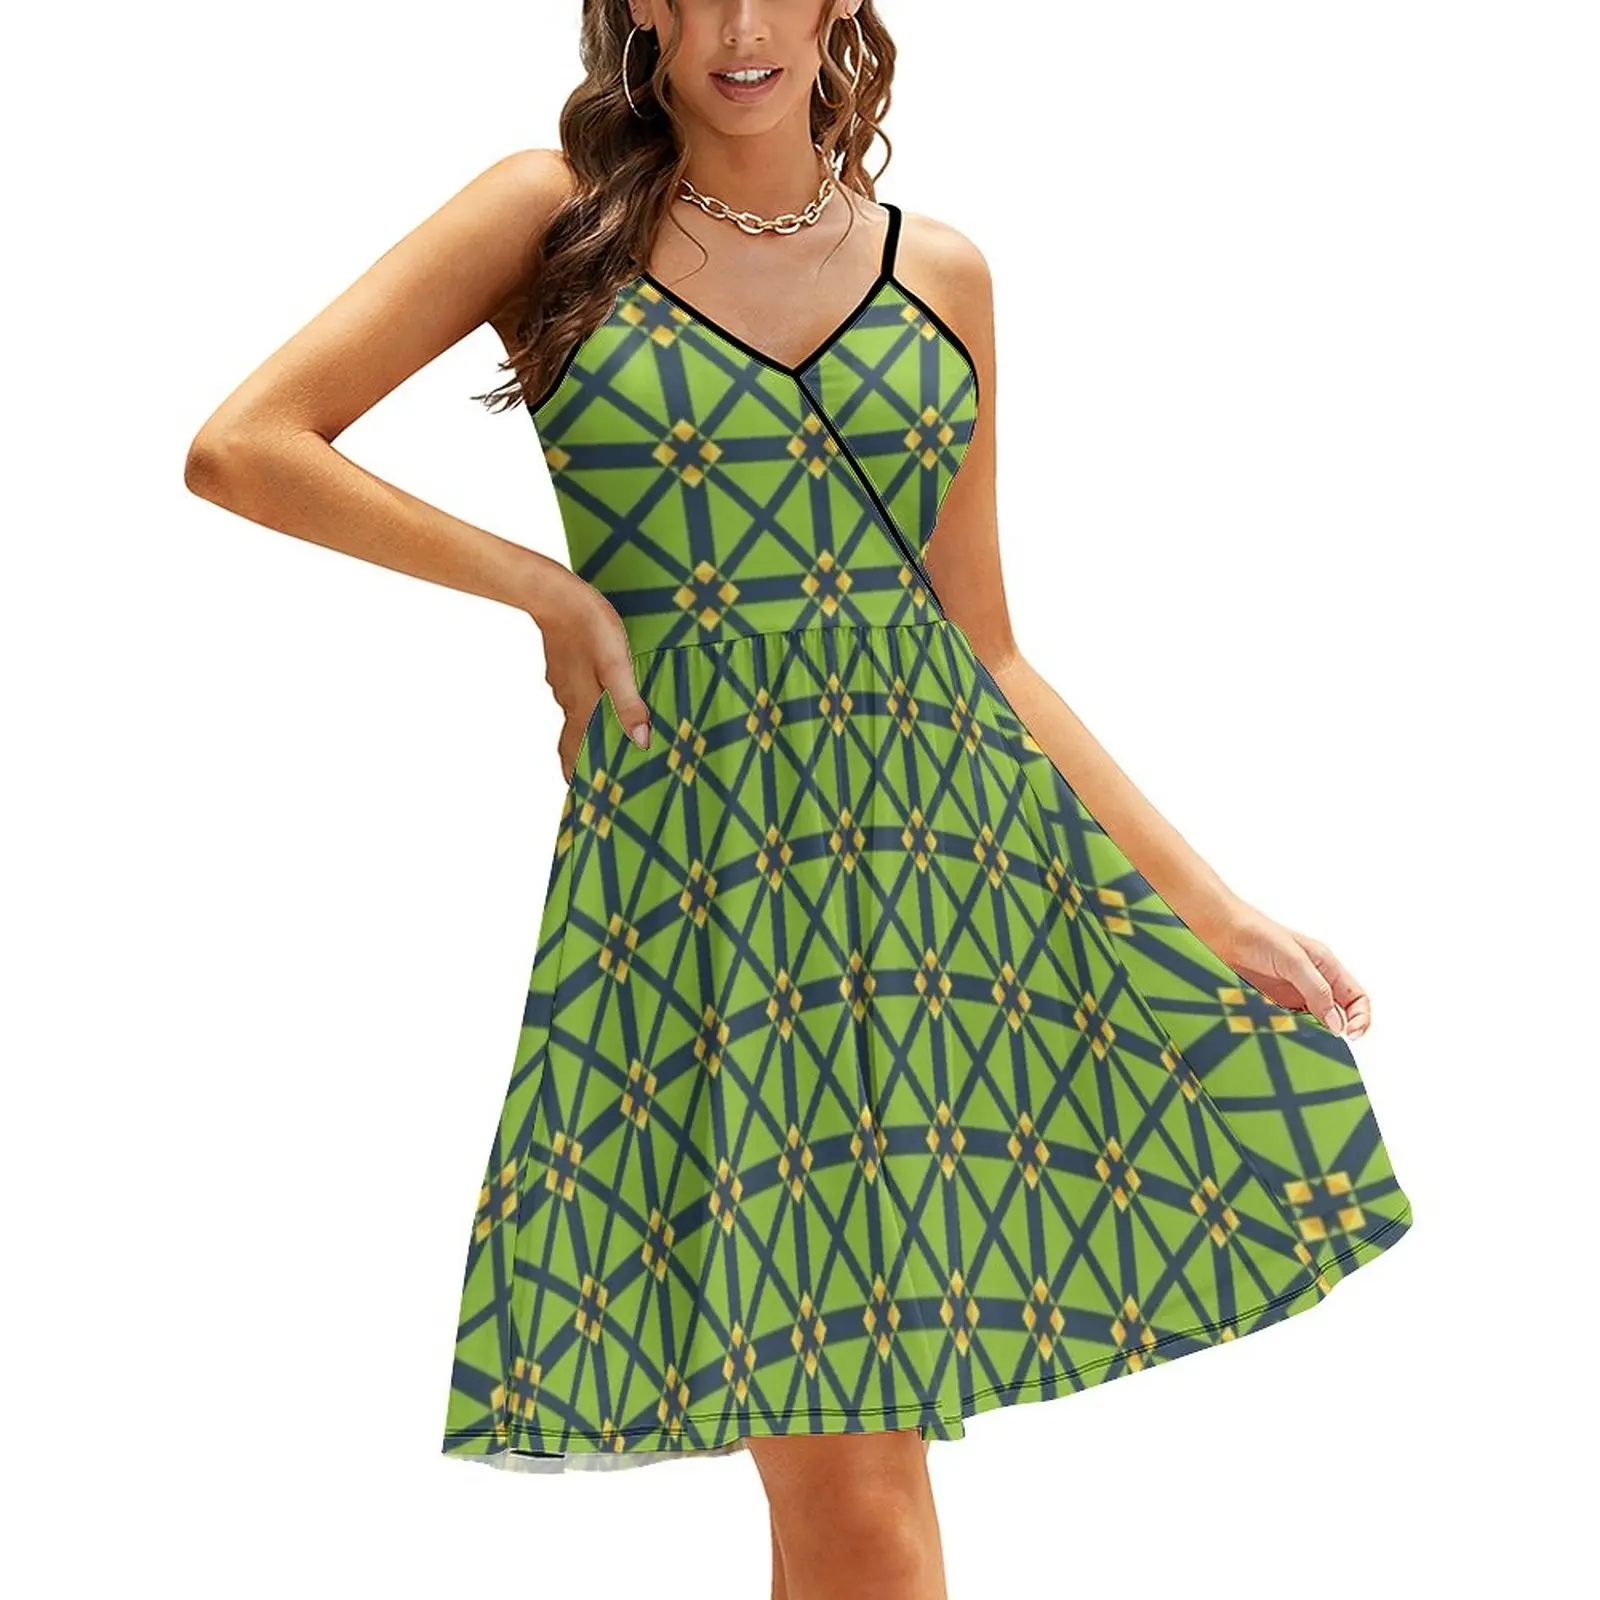 

Зеленое платье с геометрическим принтом, уличная одежда в клетку, повседневные летние платья с графическим принтом, Современные платья на бретелях-спагетти, большие размеры